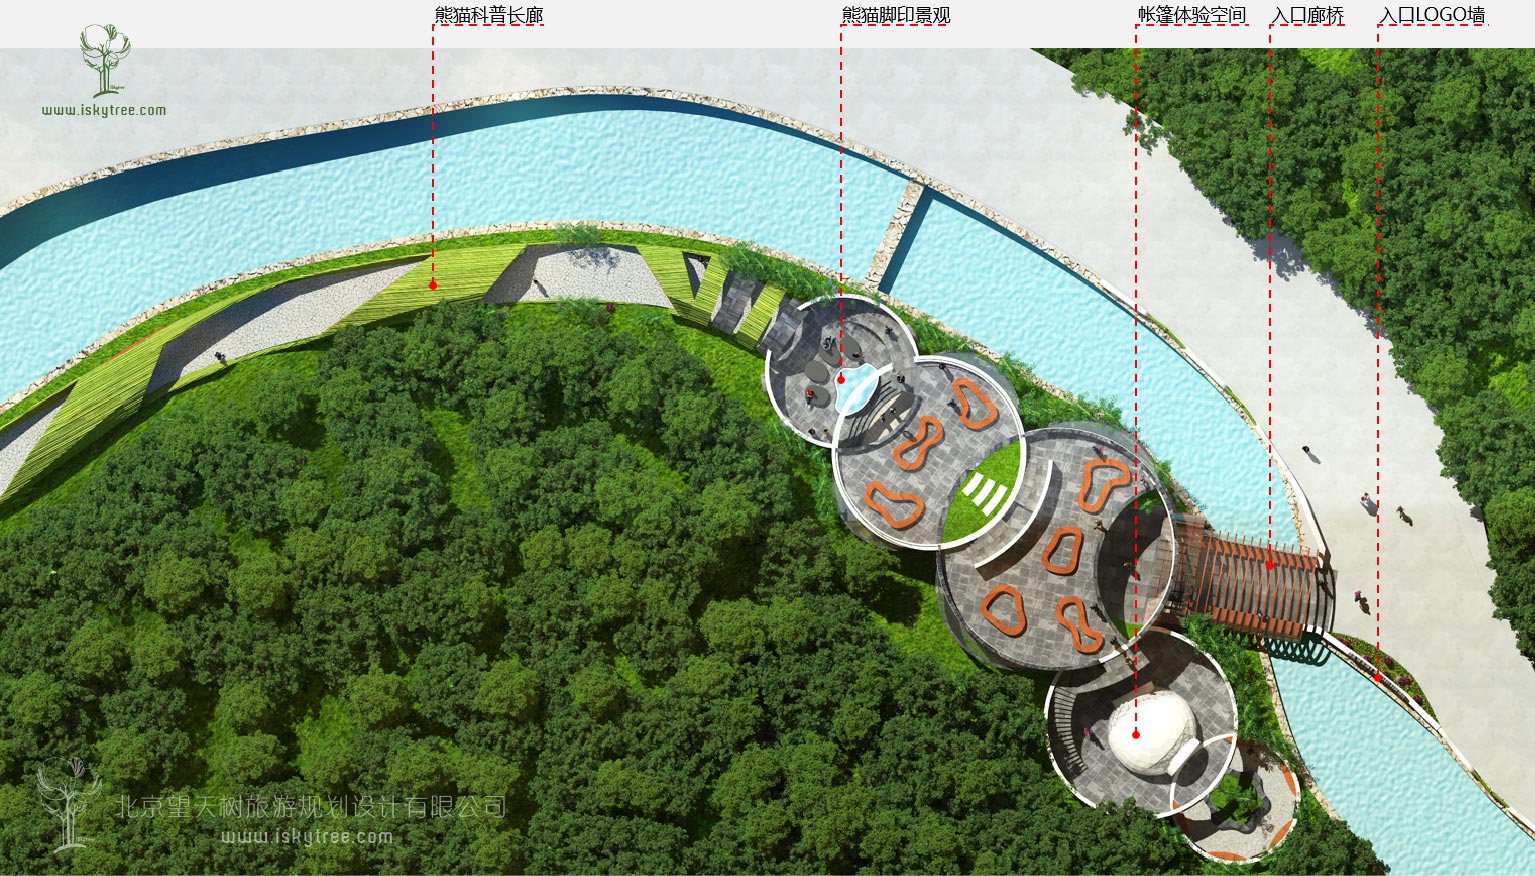 熊猫科普体验馆节点建筑景观设计